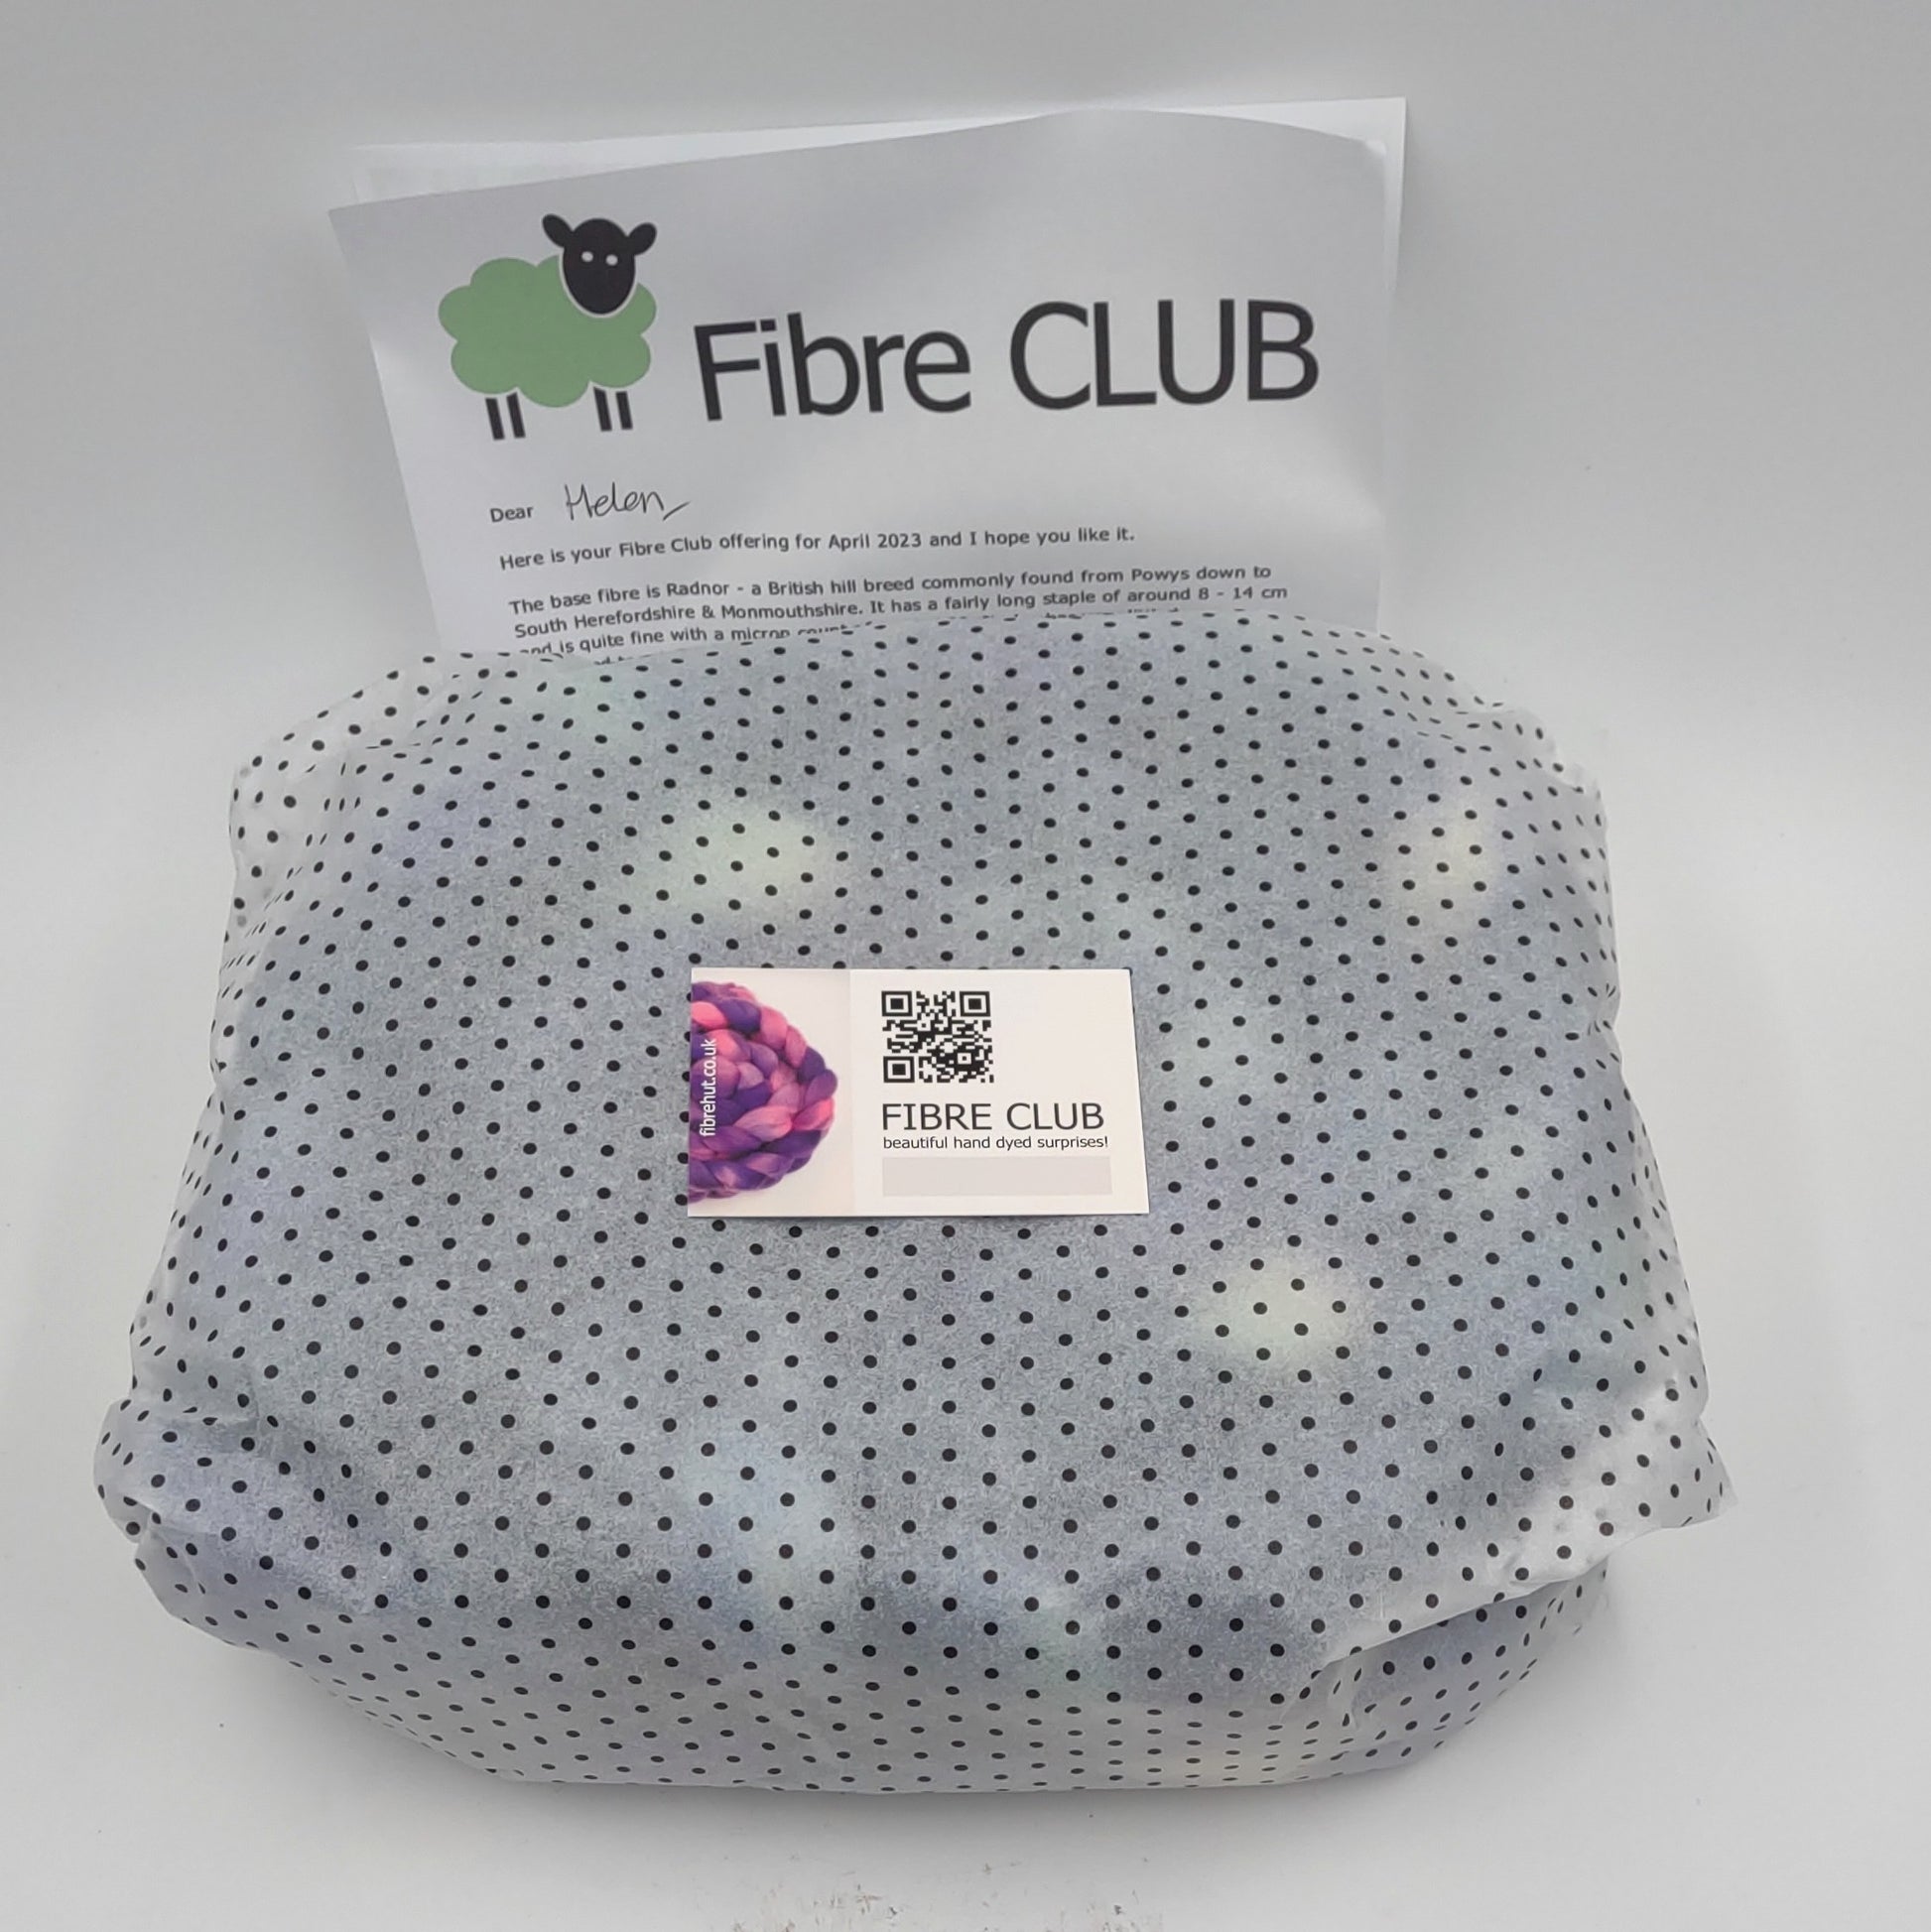 fibre club hand dyed surprises